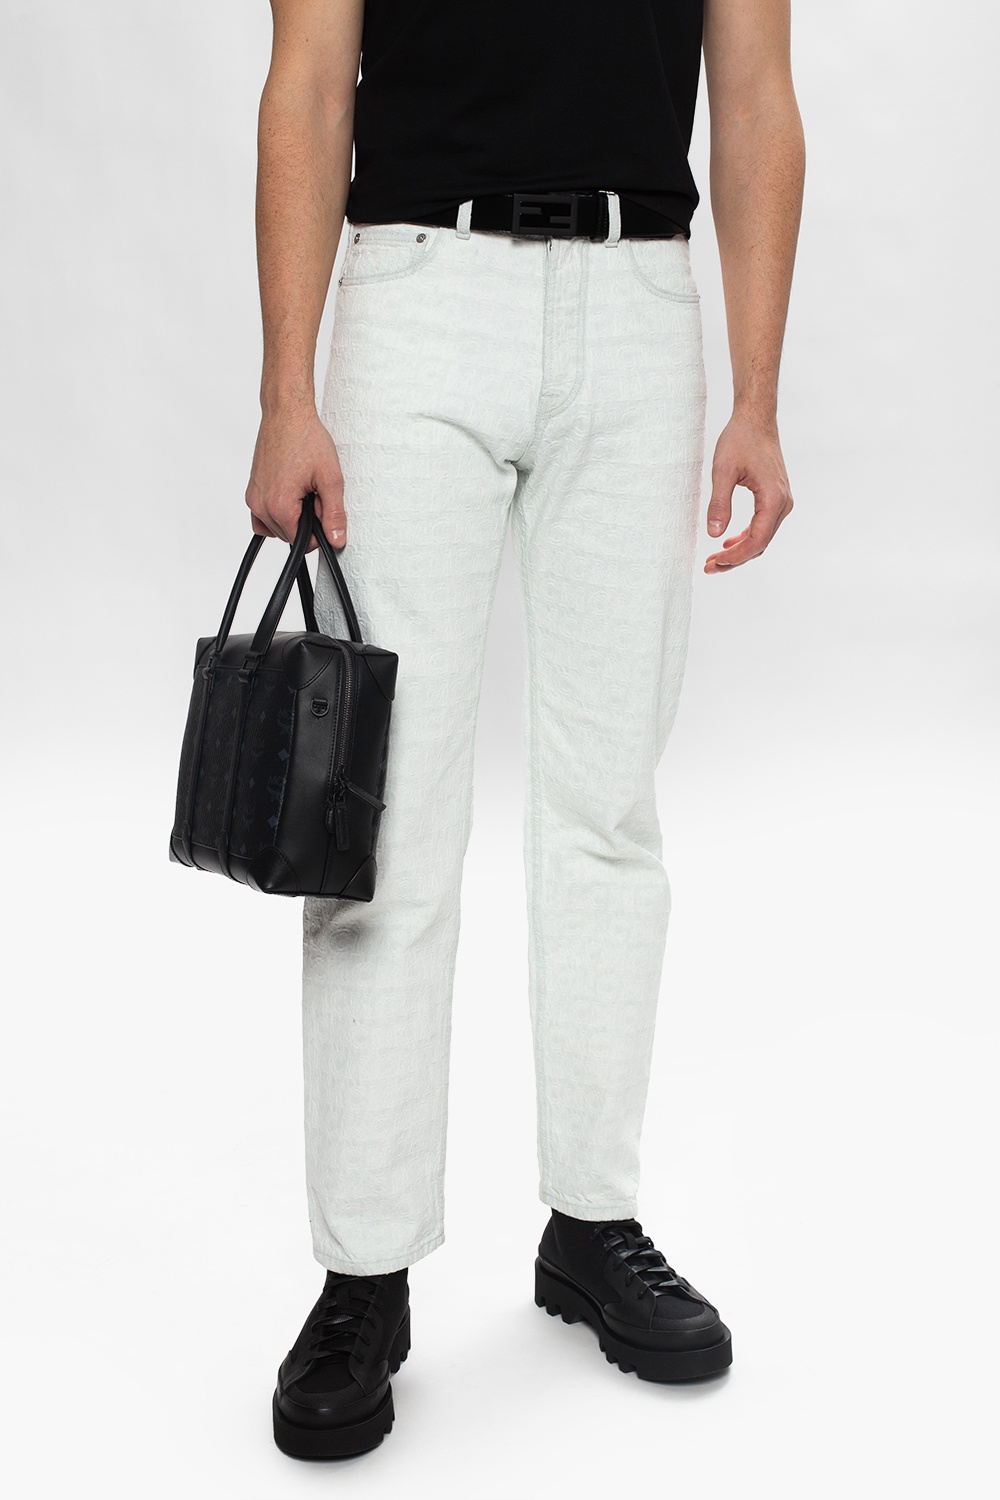 MCM shoulder bag jeans with logo jil sander 1 plecak